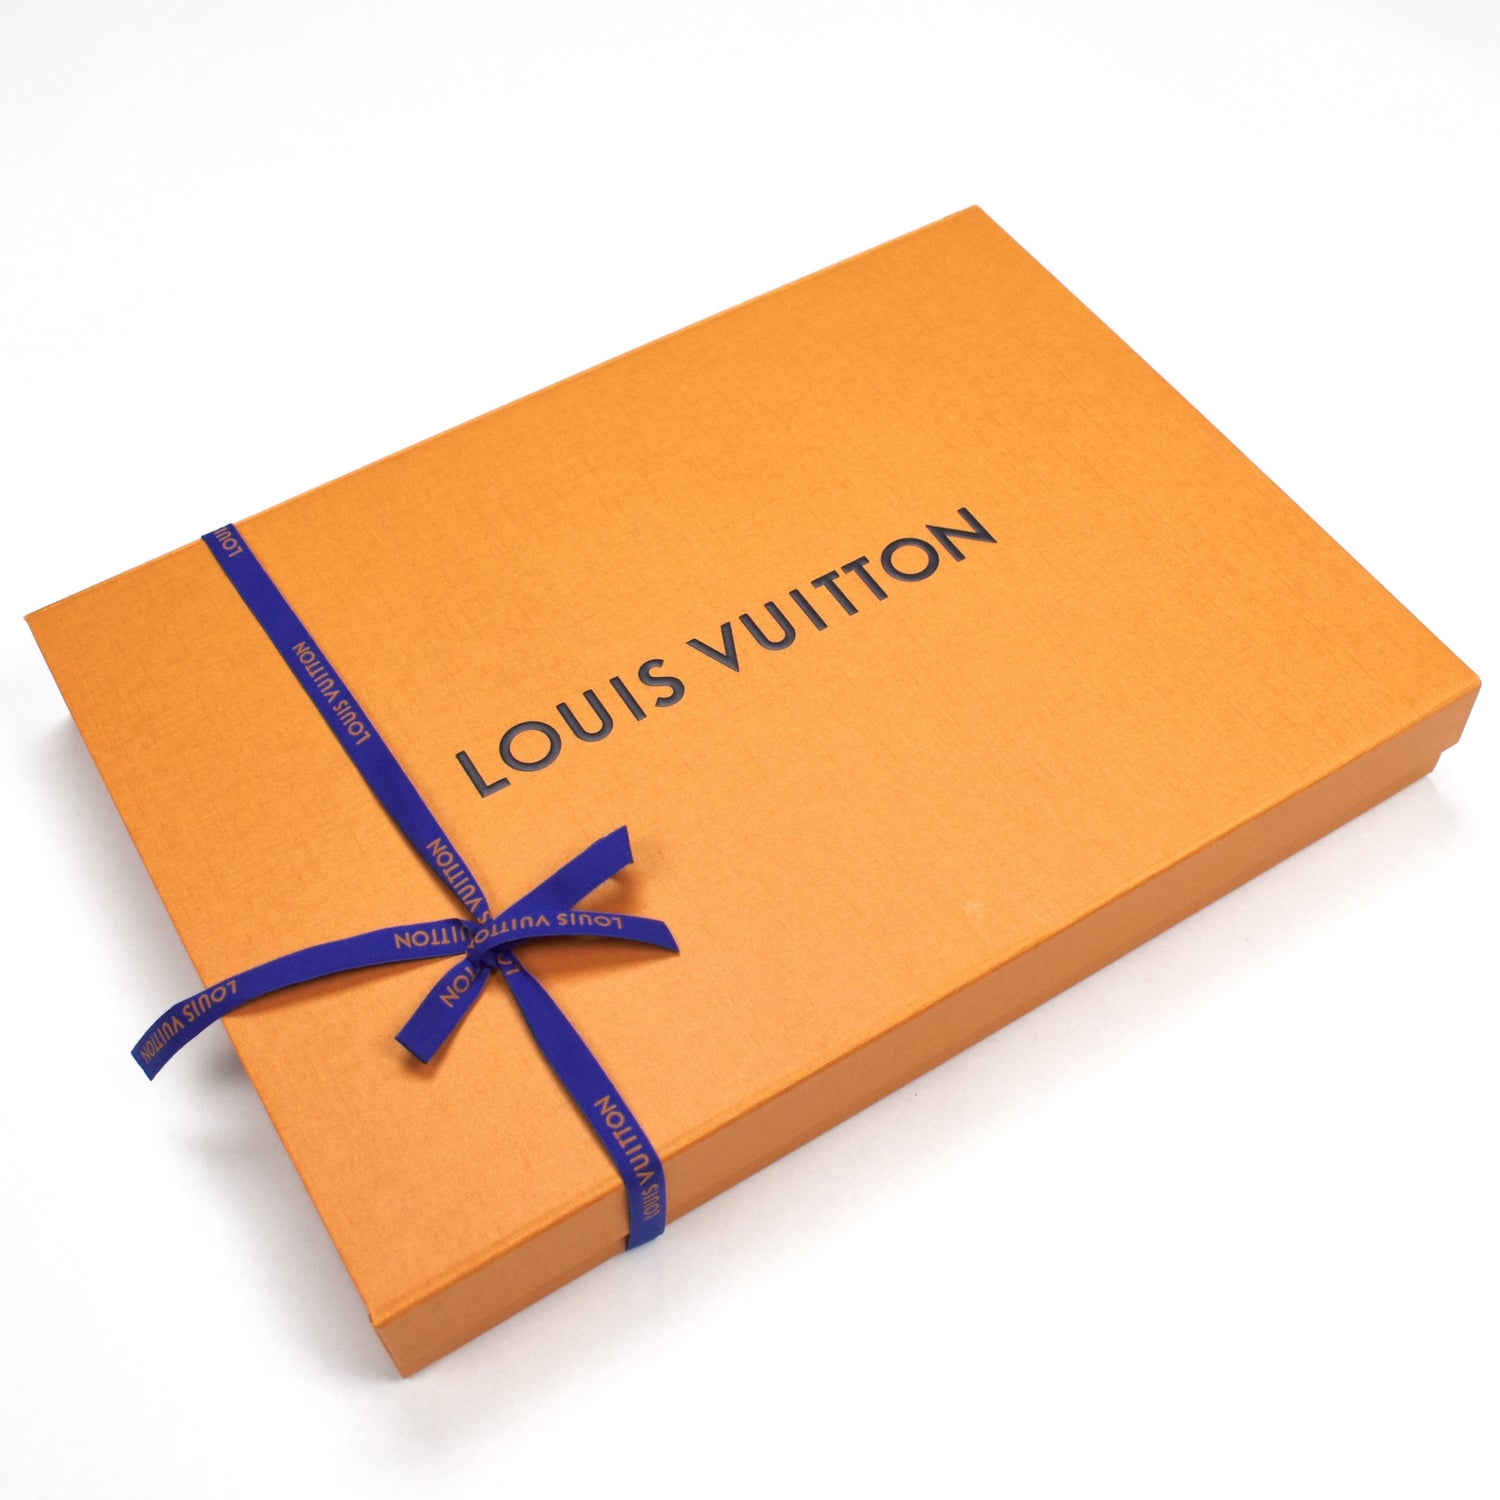 Vest Louis Vuitton x Supreme Blue size 52 FR in Denim - Jeans - 37016315